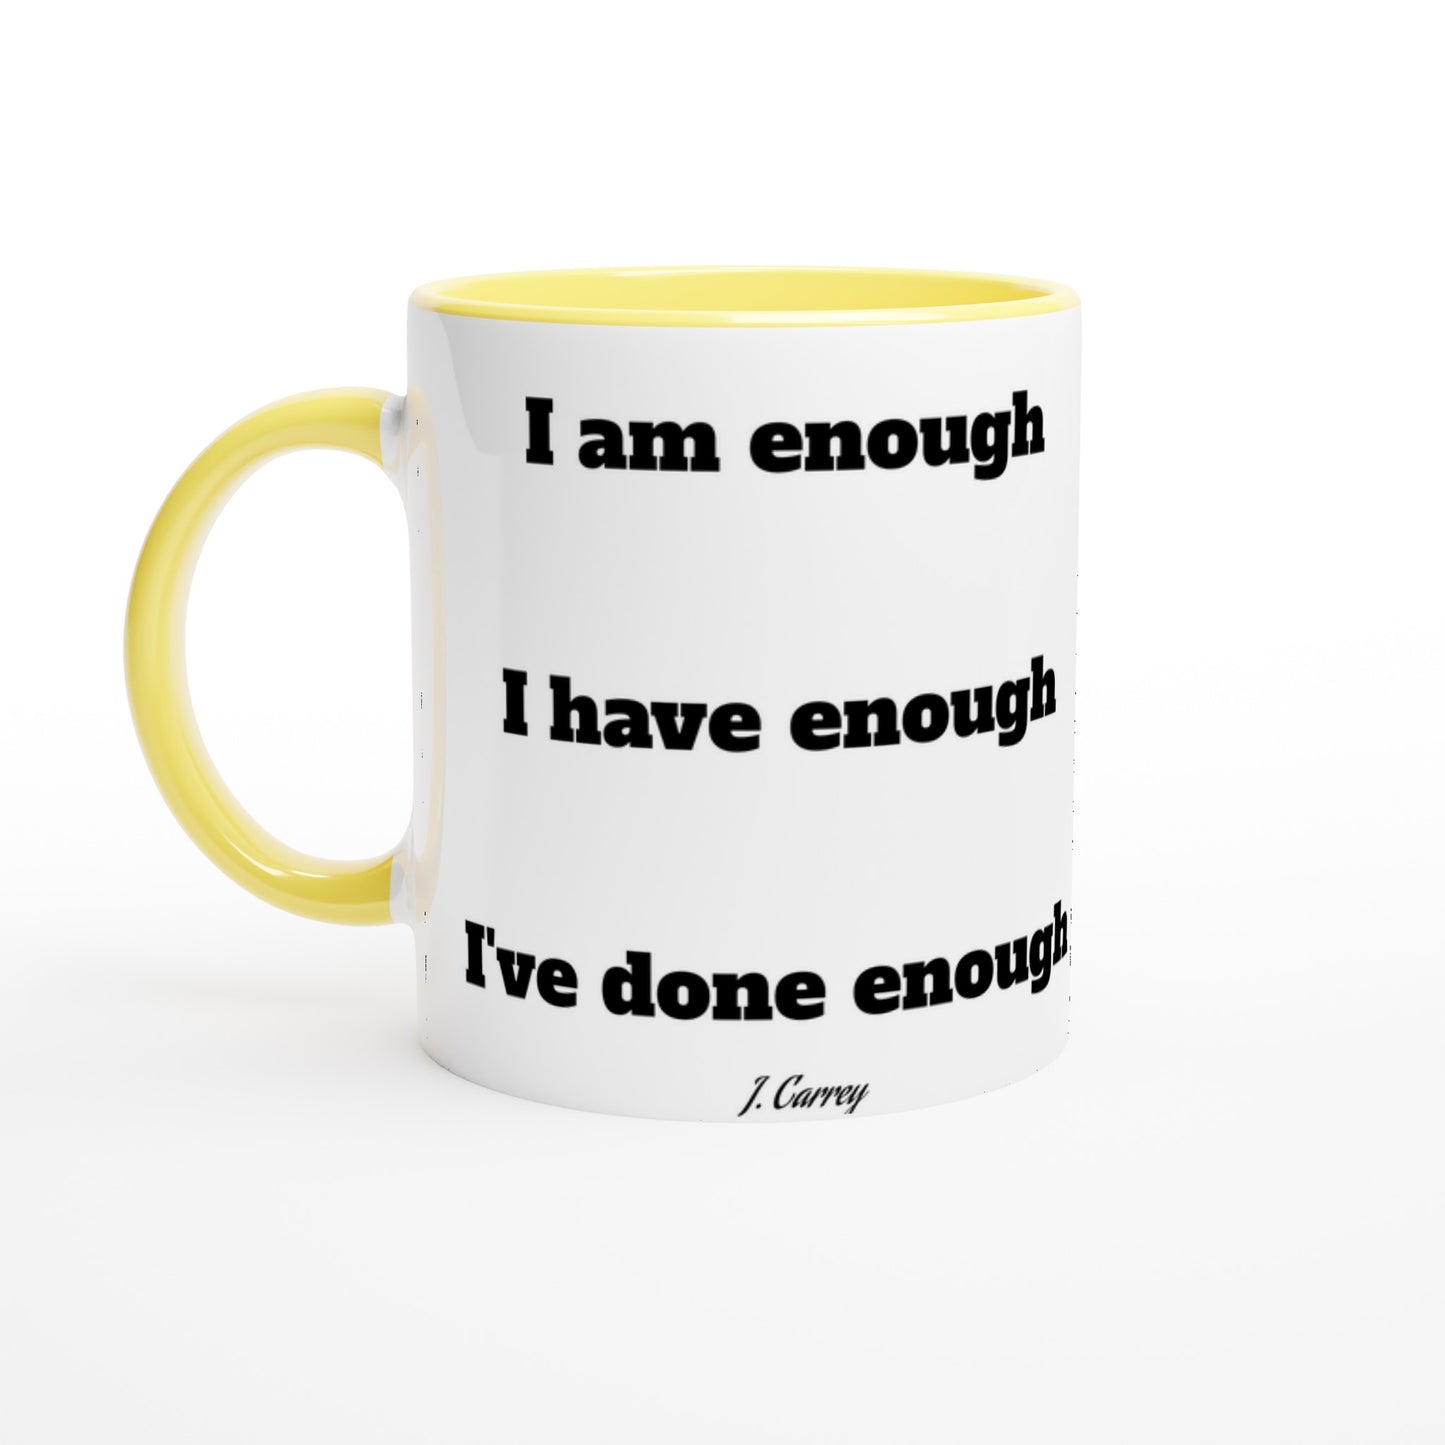 Quote Mug - Jim Carrey I am enough - White Ceramic Mug 330ml